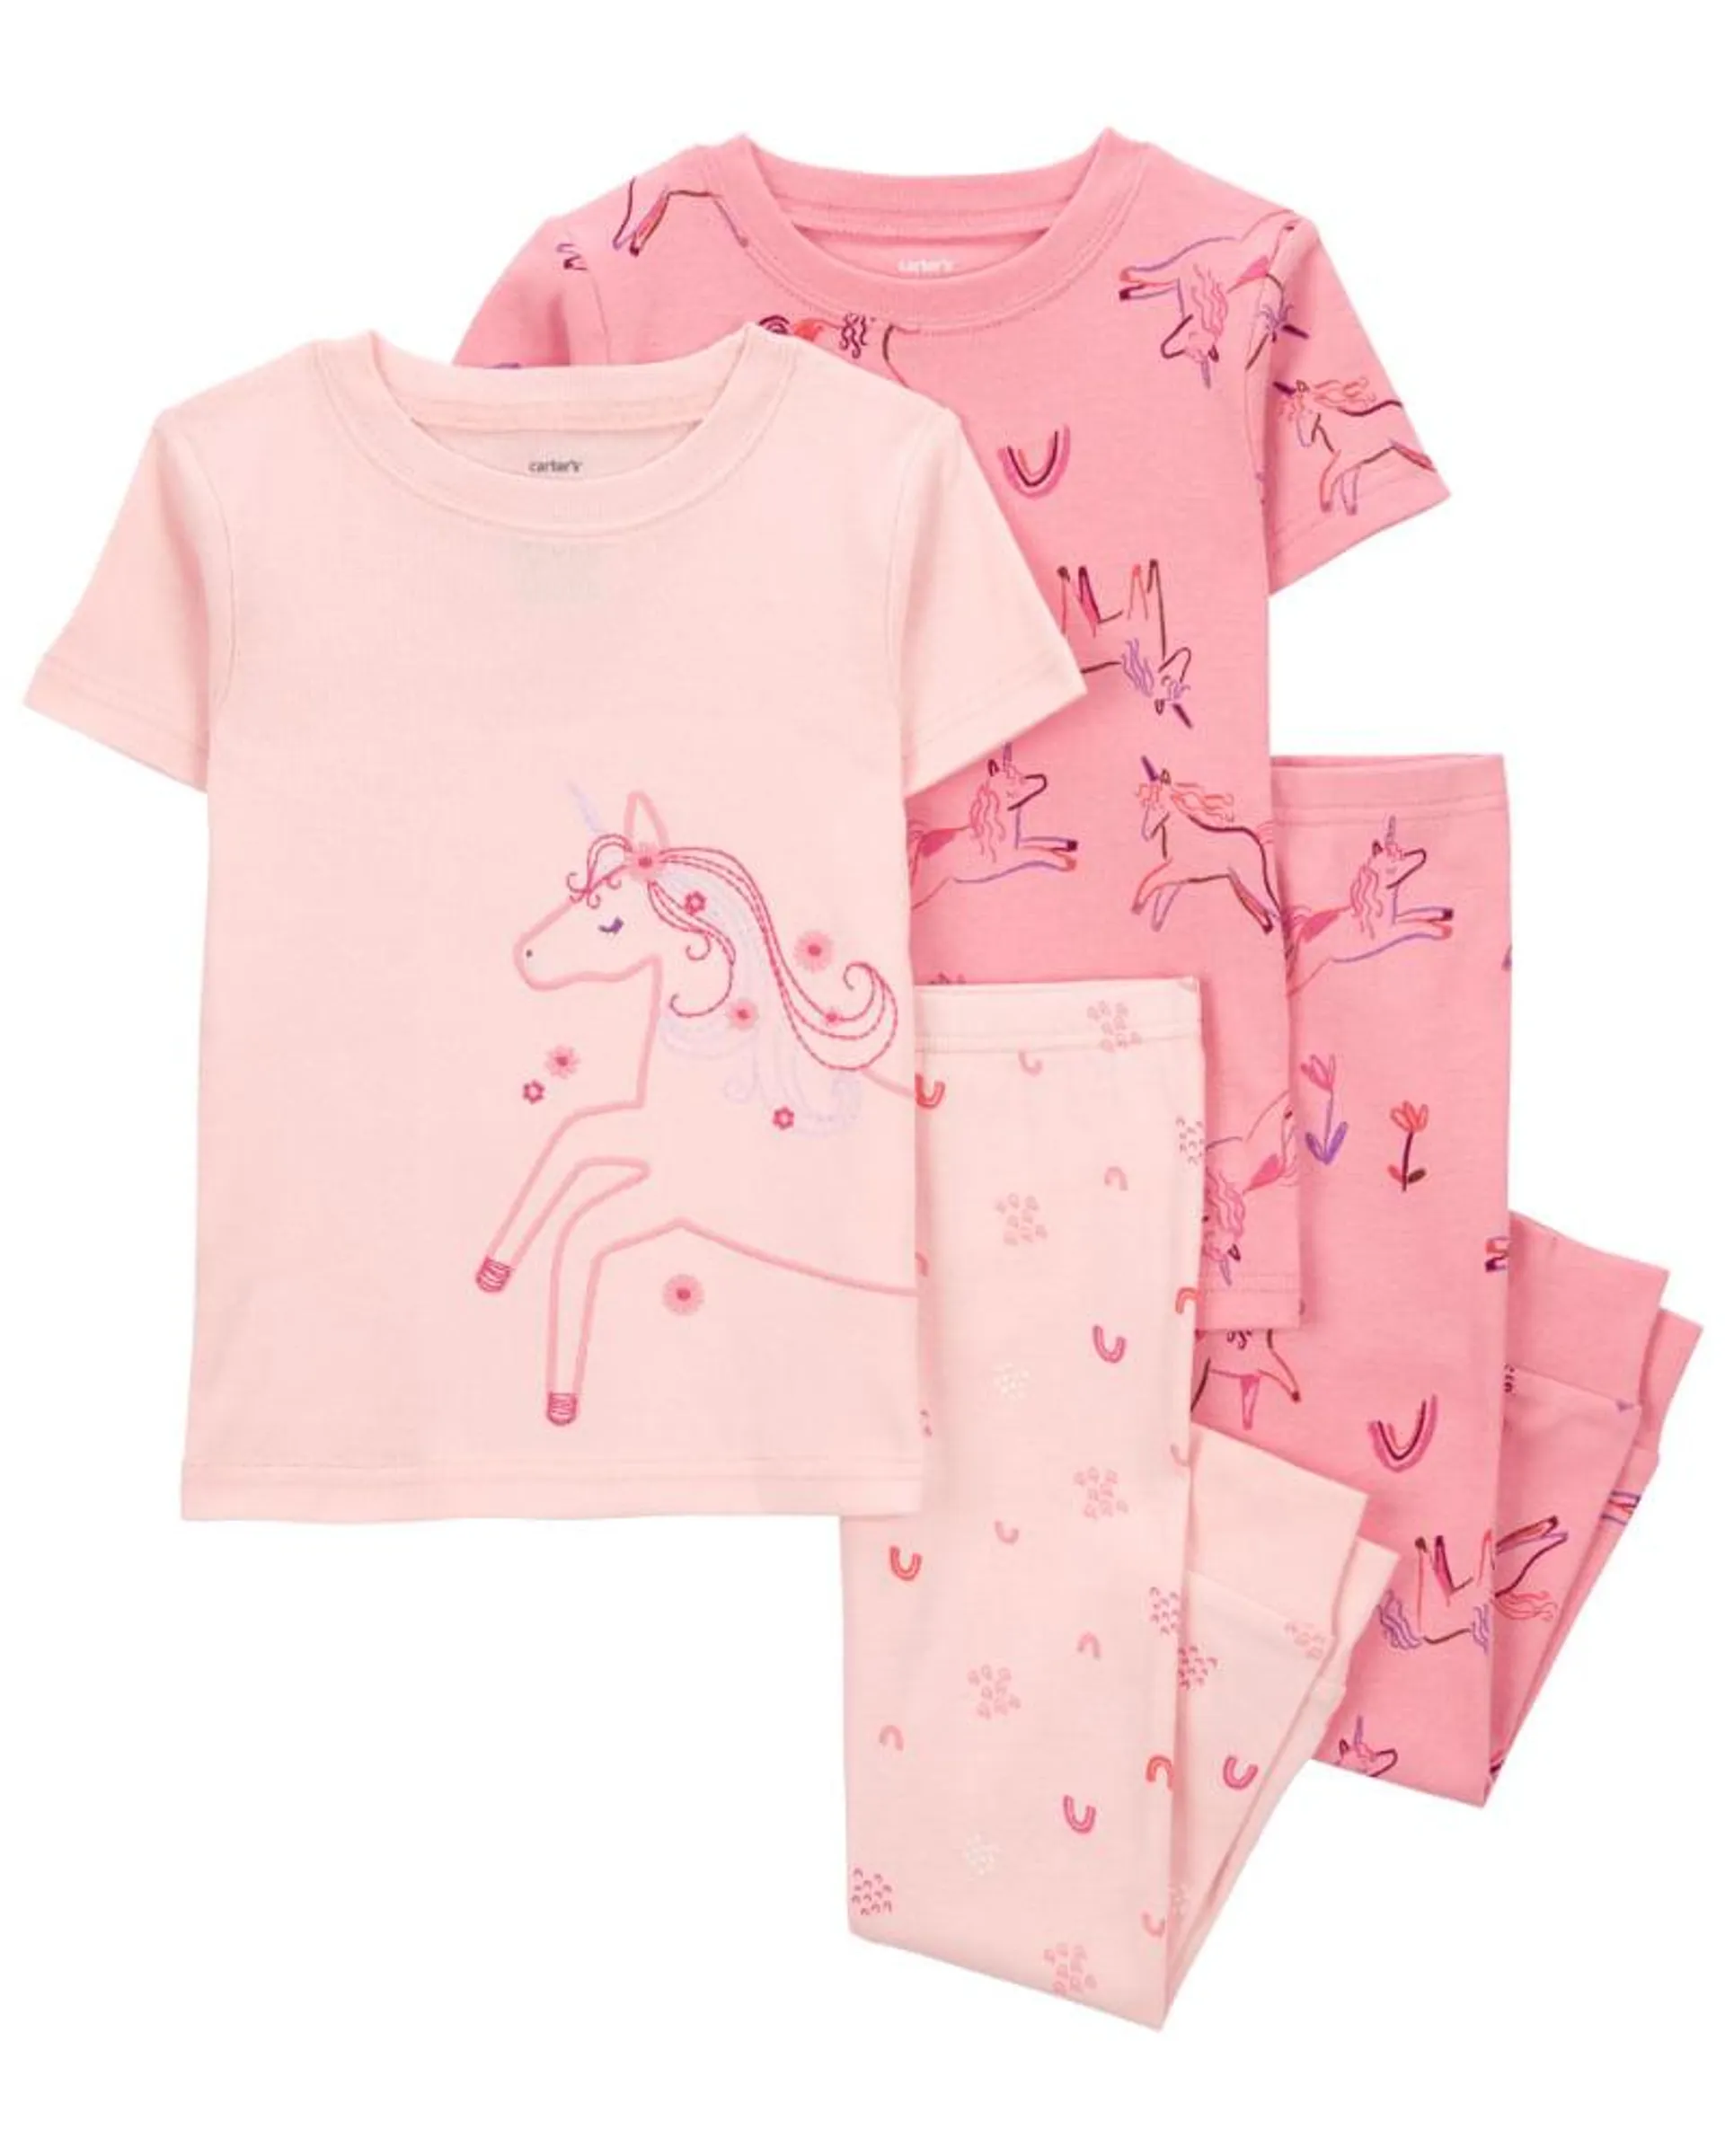 Pijama De 4 Piezas De Unicornio Carter's